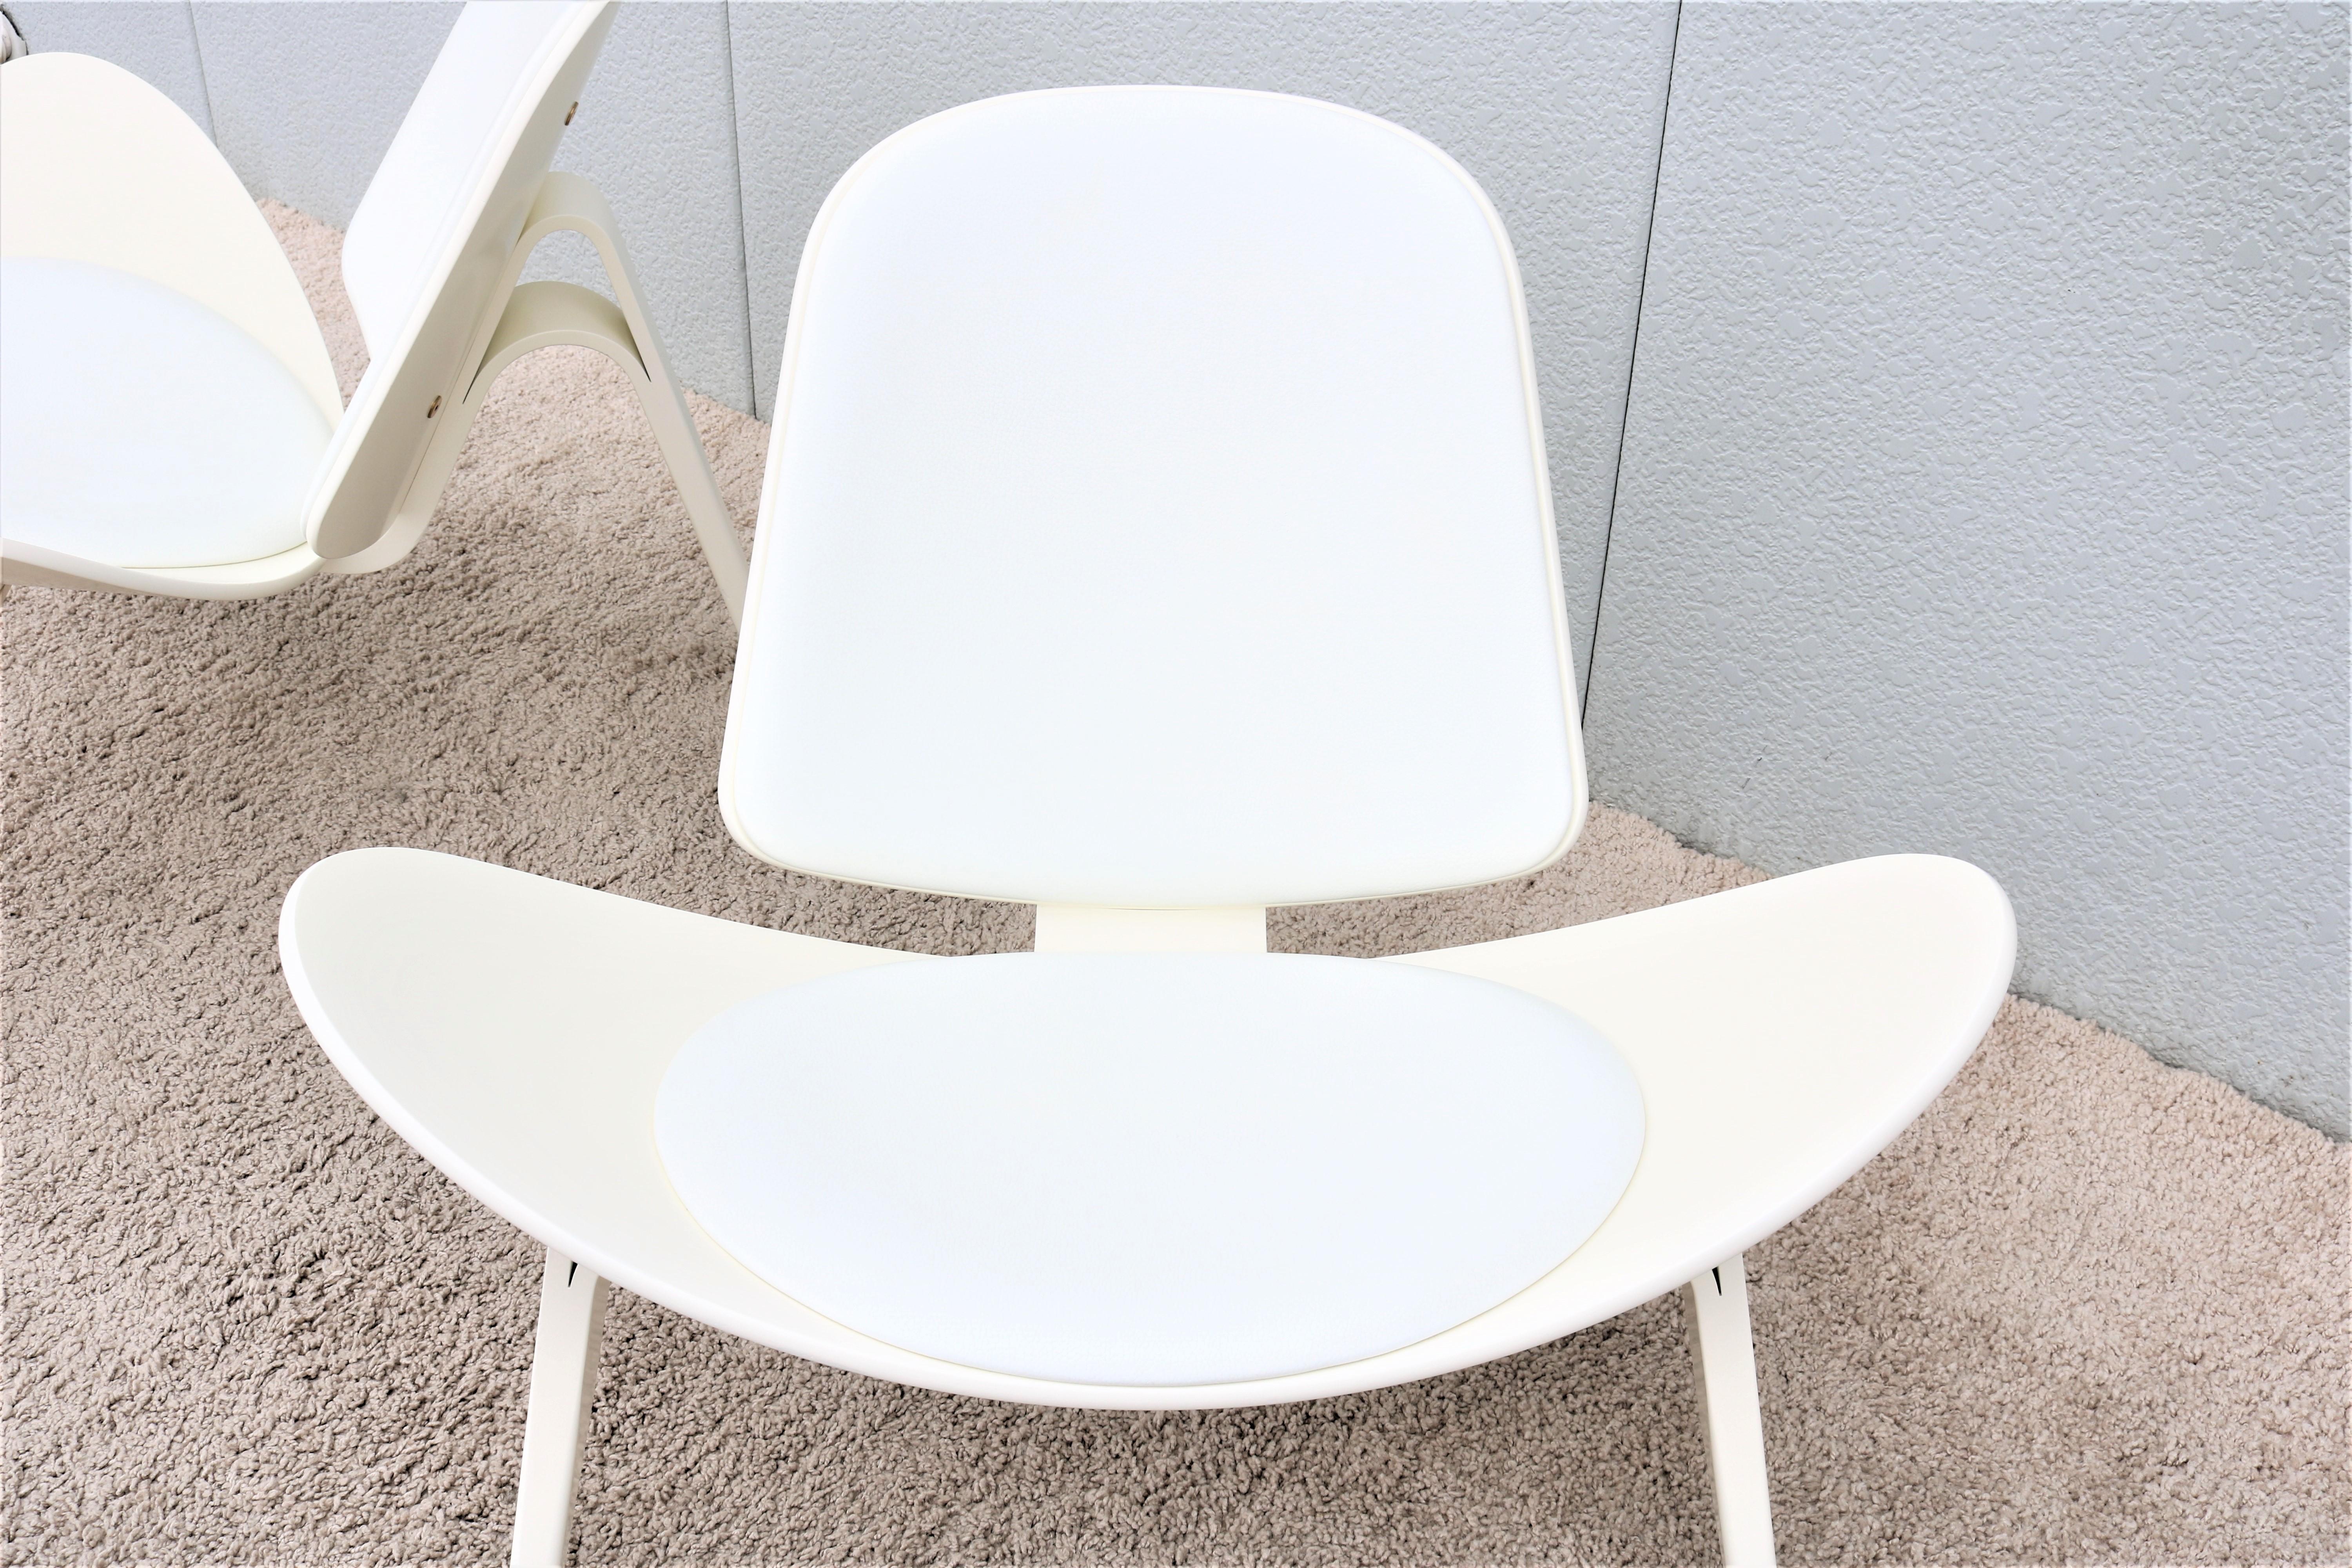 Cuir Paire de chaises coquillage CH07 de Hans J. Wegner pour Carl Hansen, de style danois moderne du milieu du siècle dernier en vente